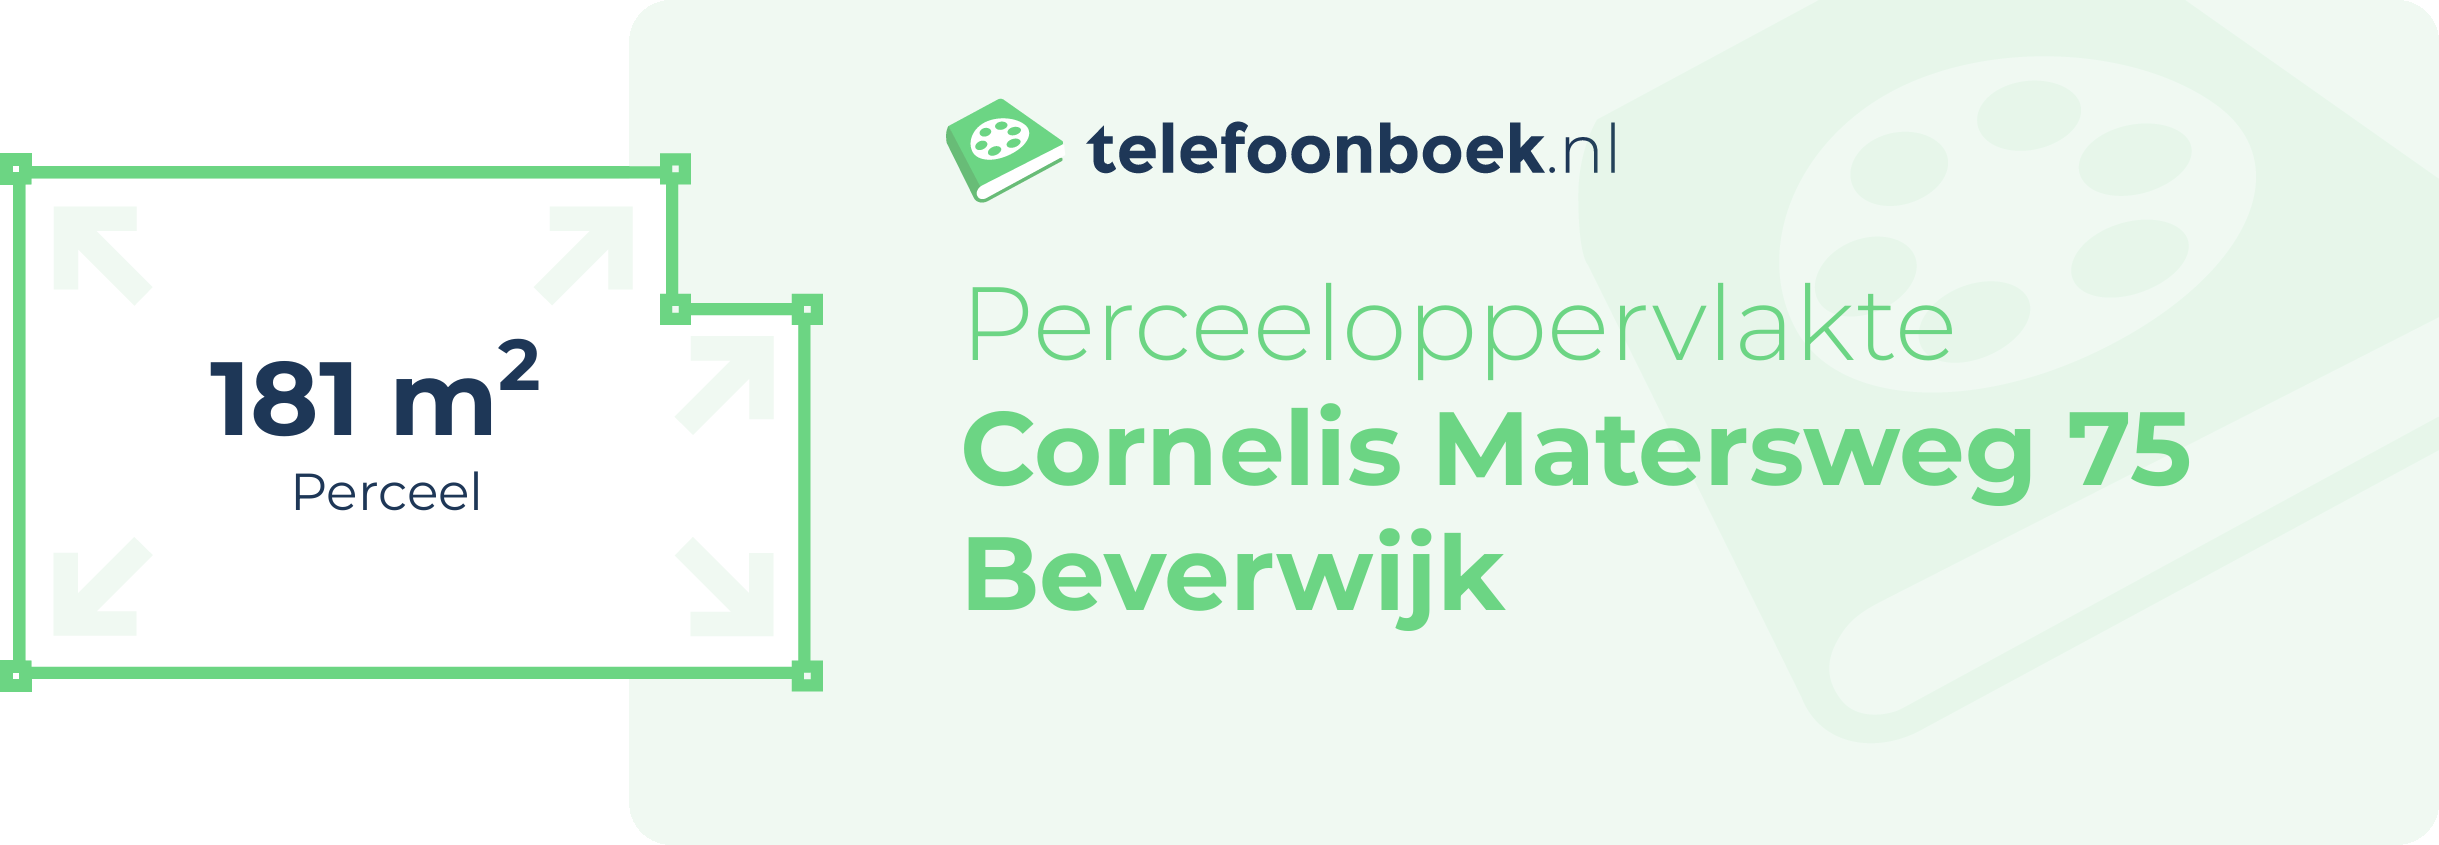 Perceeloppervlakte Cornelis Matersweg 75 Beverwijk